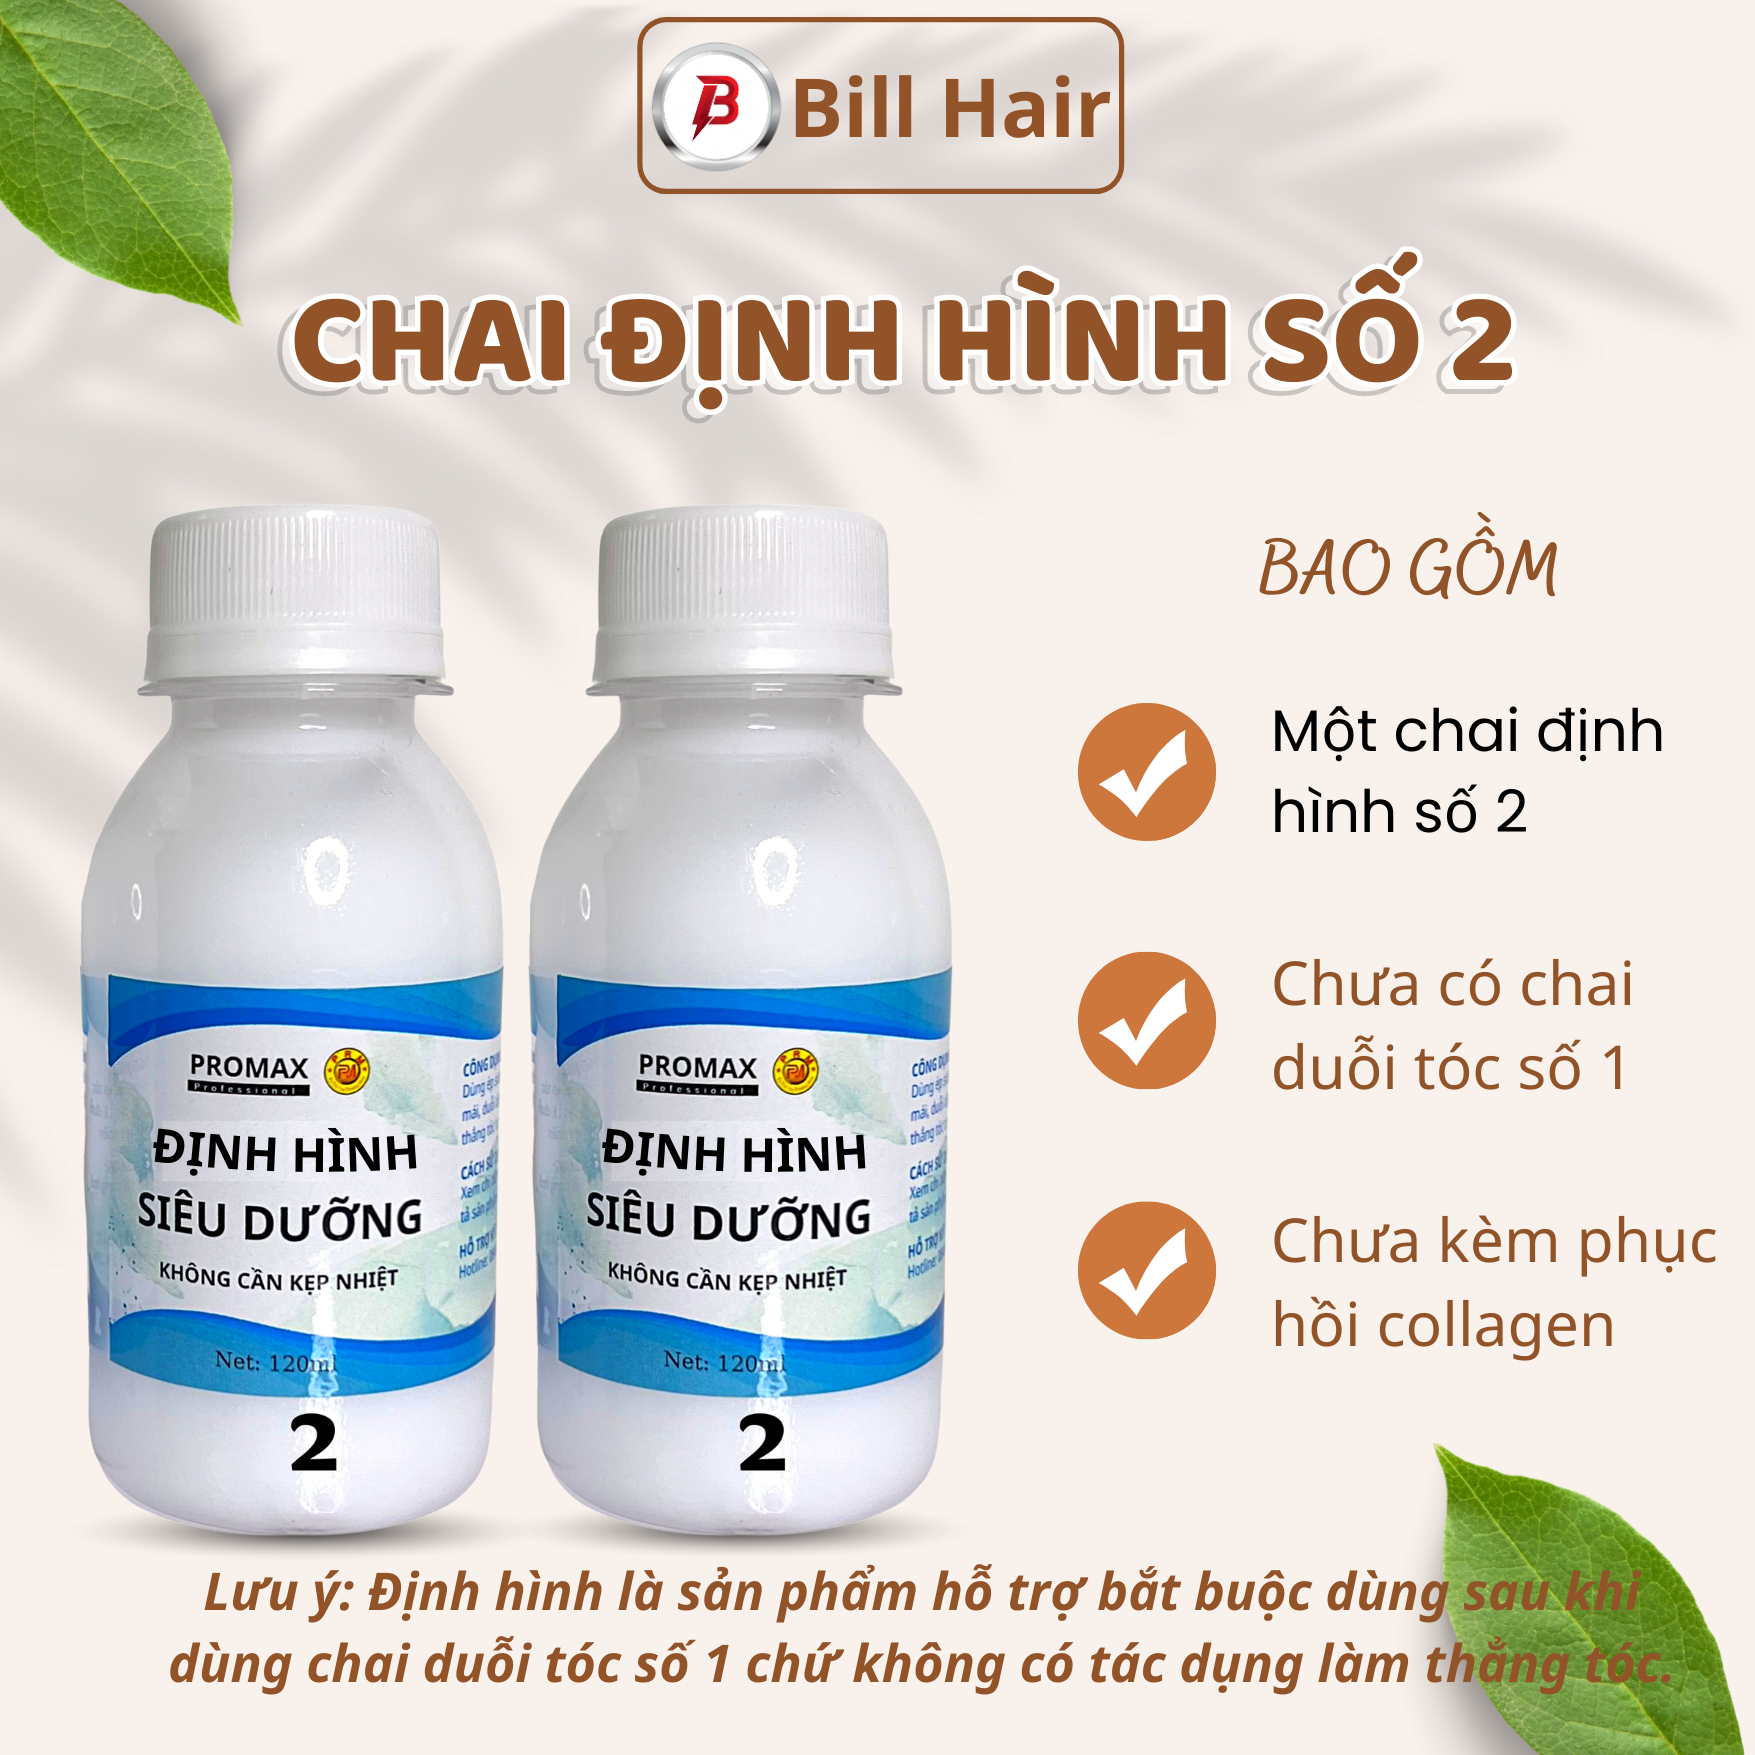 Thuốc duỗi tóc tại nhà không cần kẹp nhiệt thuốc ép Side tóc PRM siêu dưỡng giúp chống hư tổn tóc | Bill Hair Billhair